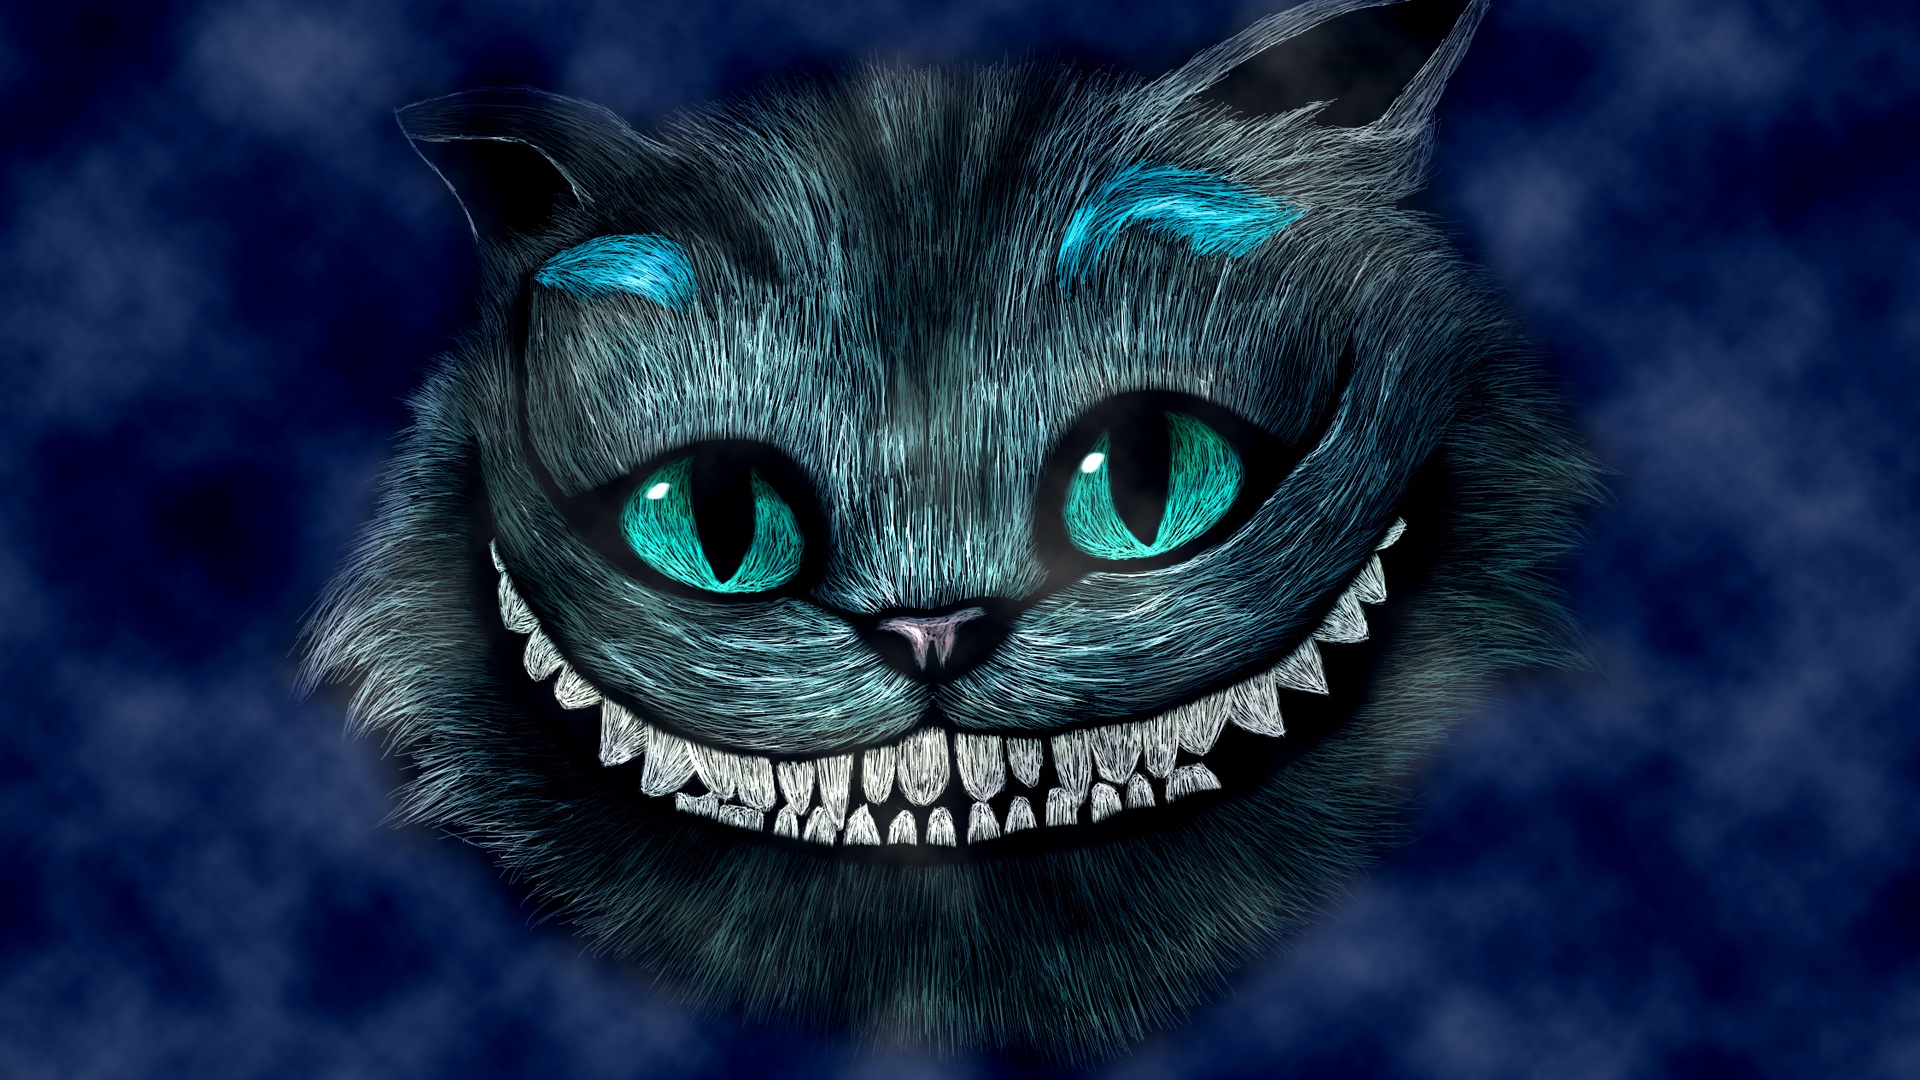 Alice In Wonderland Smiling Cheshire Cat Wallpaper Desktop